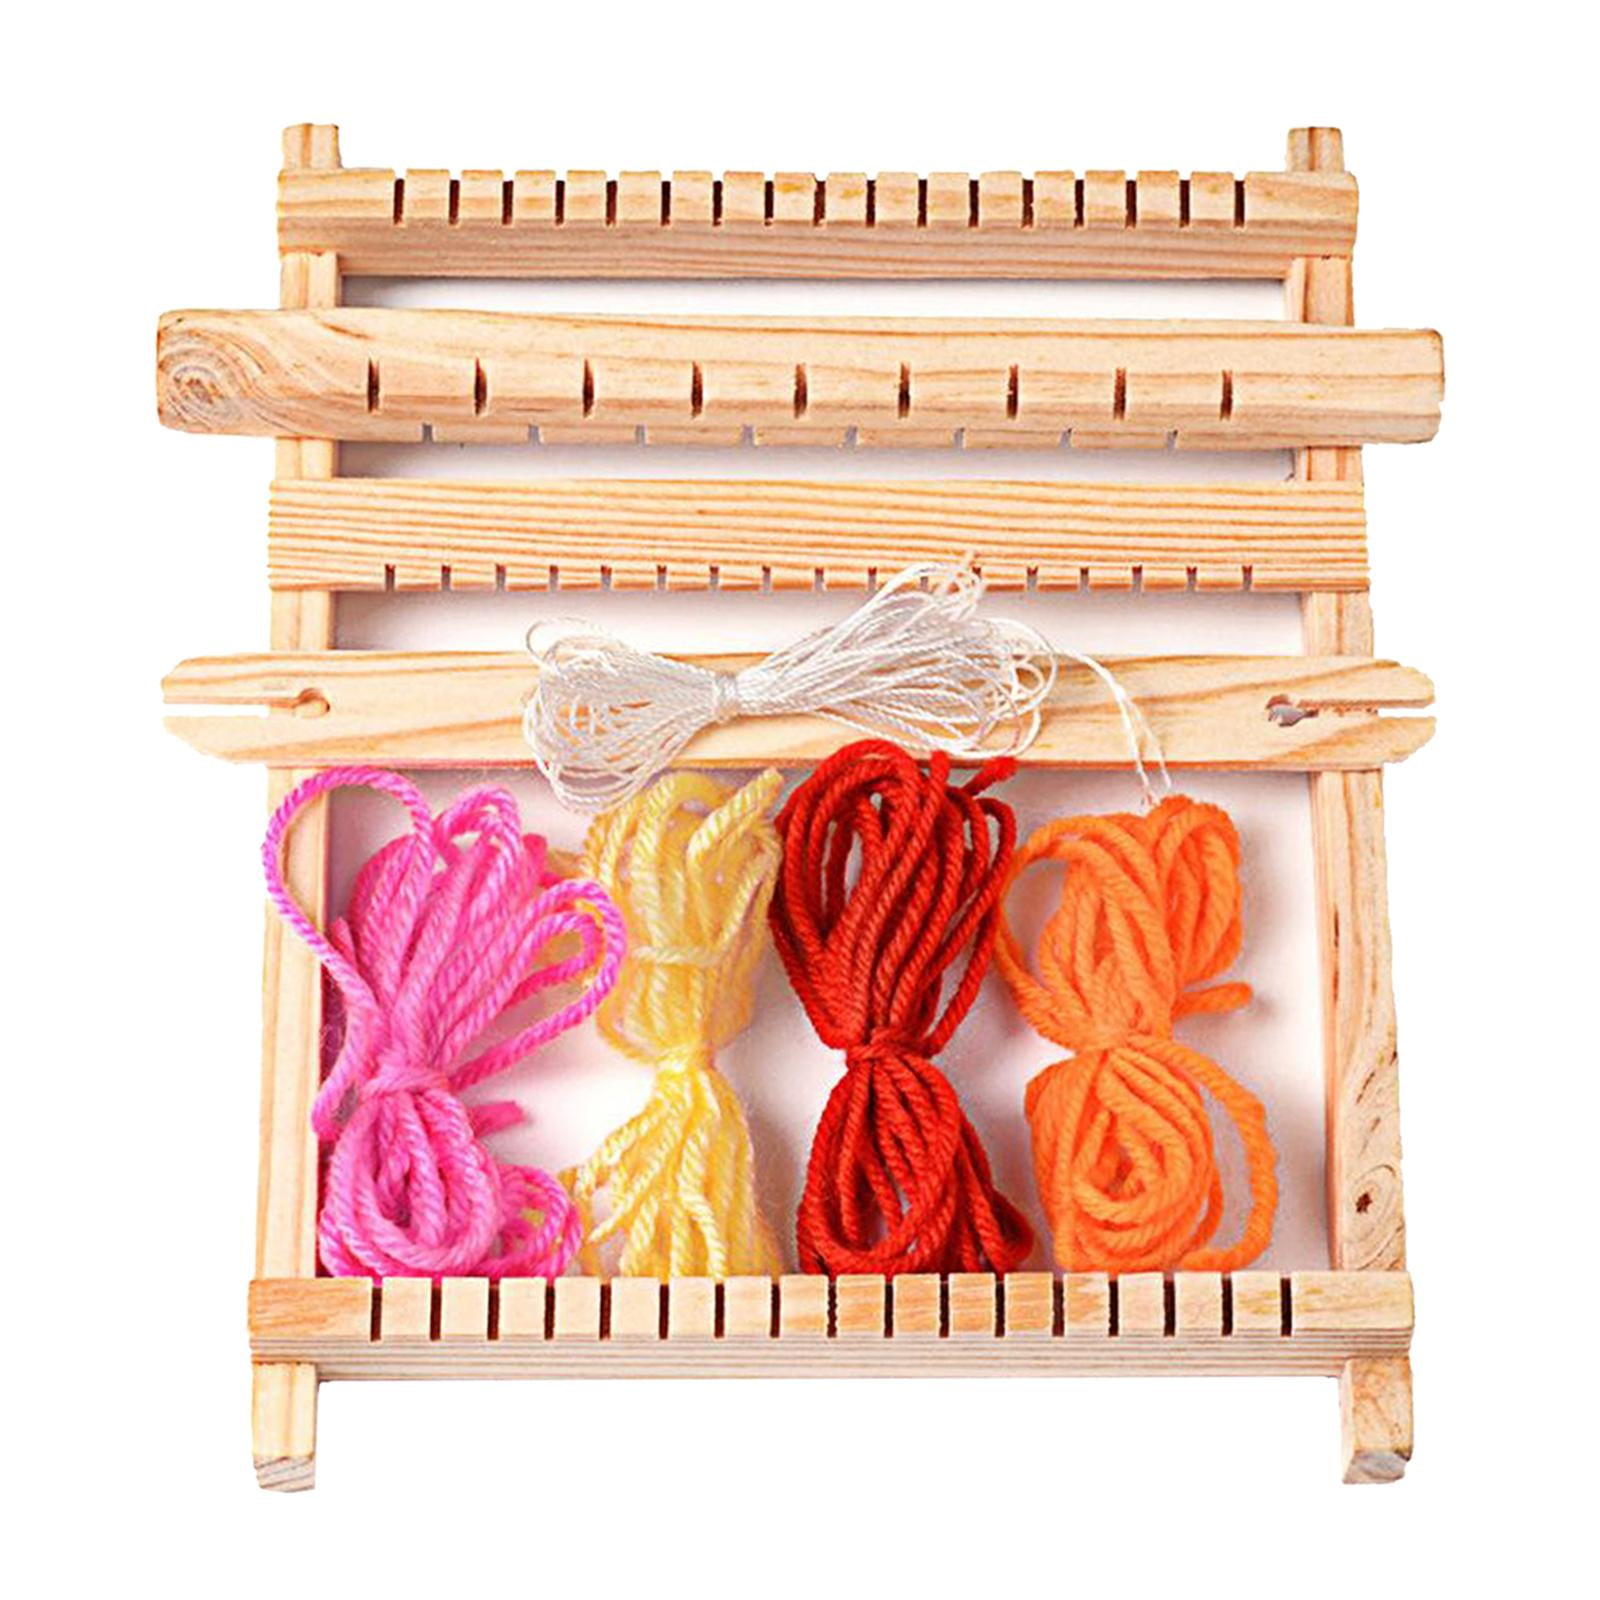 Nisorpa Afghan Loom Knitting Board, Weave Loom Kit, Knitting Sweater  Helper, Creative DIY Knitting 